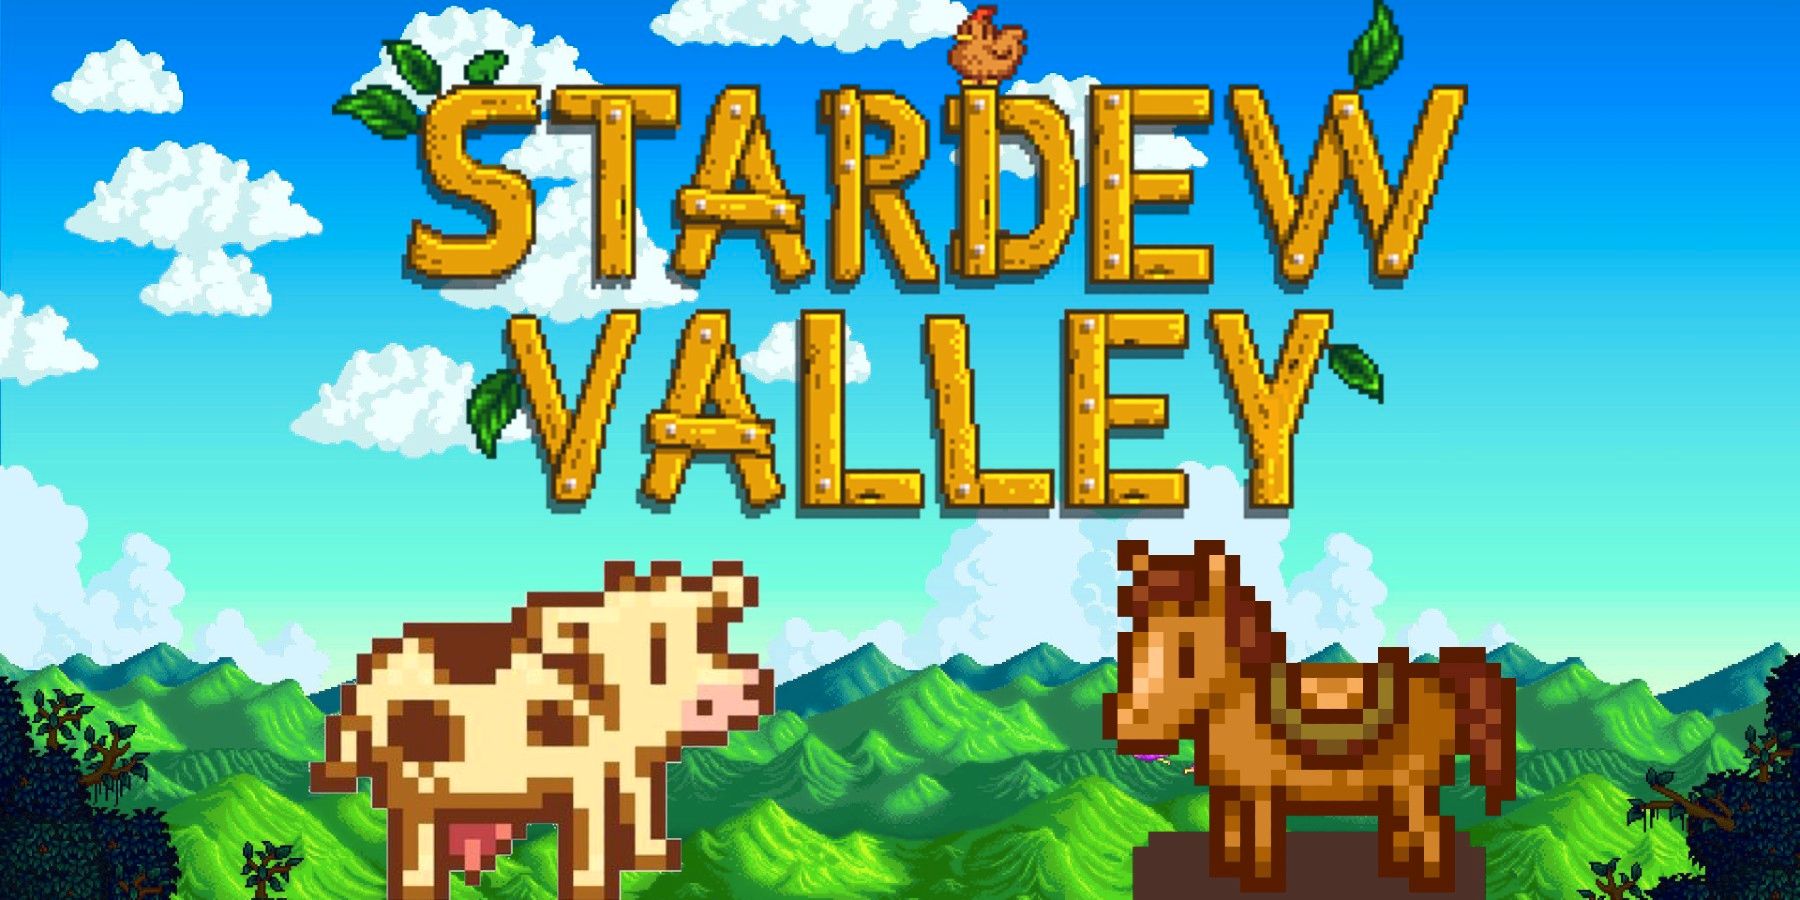 Egészséges Stardew Valley klip a játékos „terelő” szarvasmarhát mutatja be